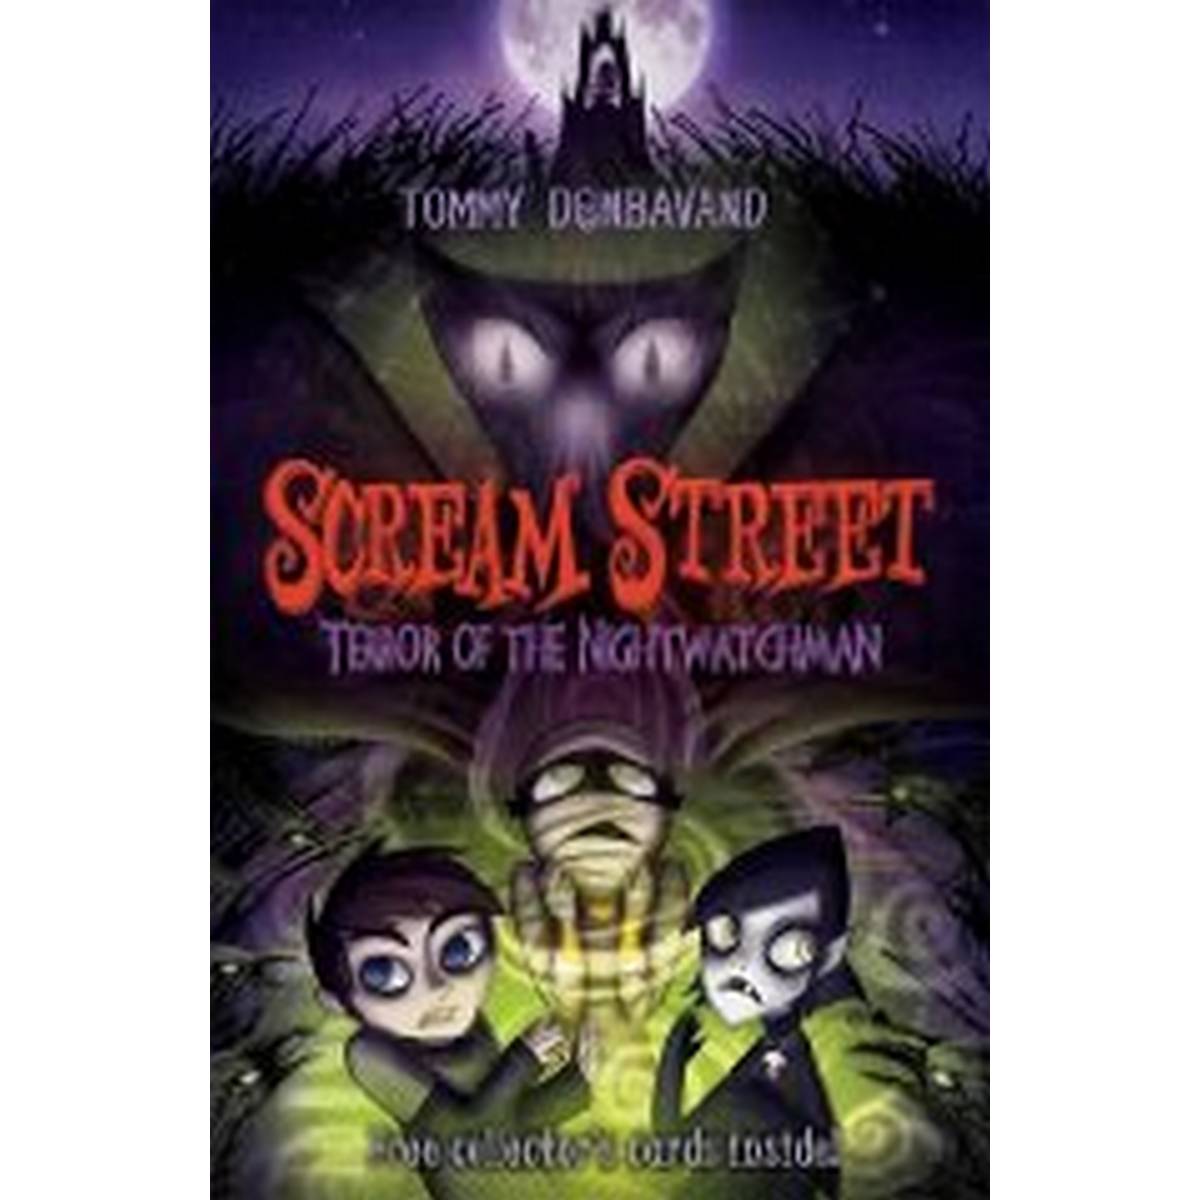 Scream Street 9: Terror of the Nightwatchman